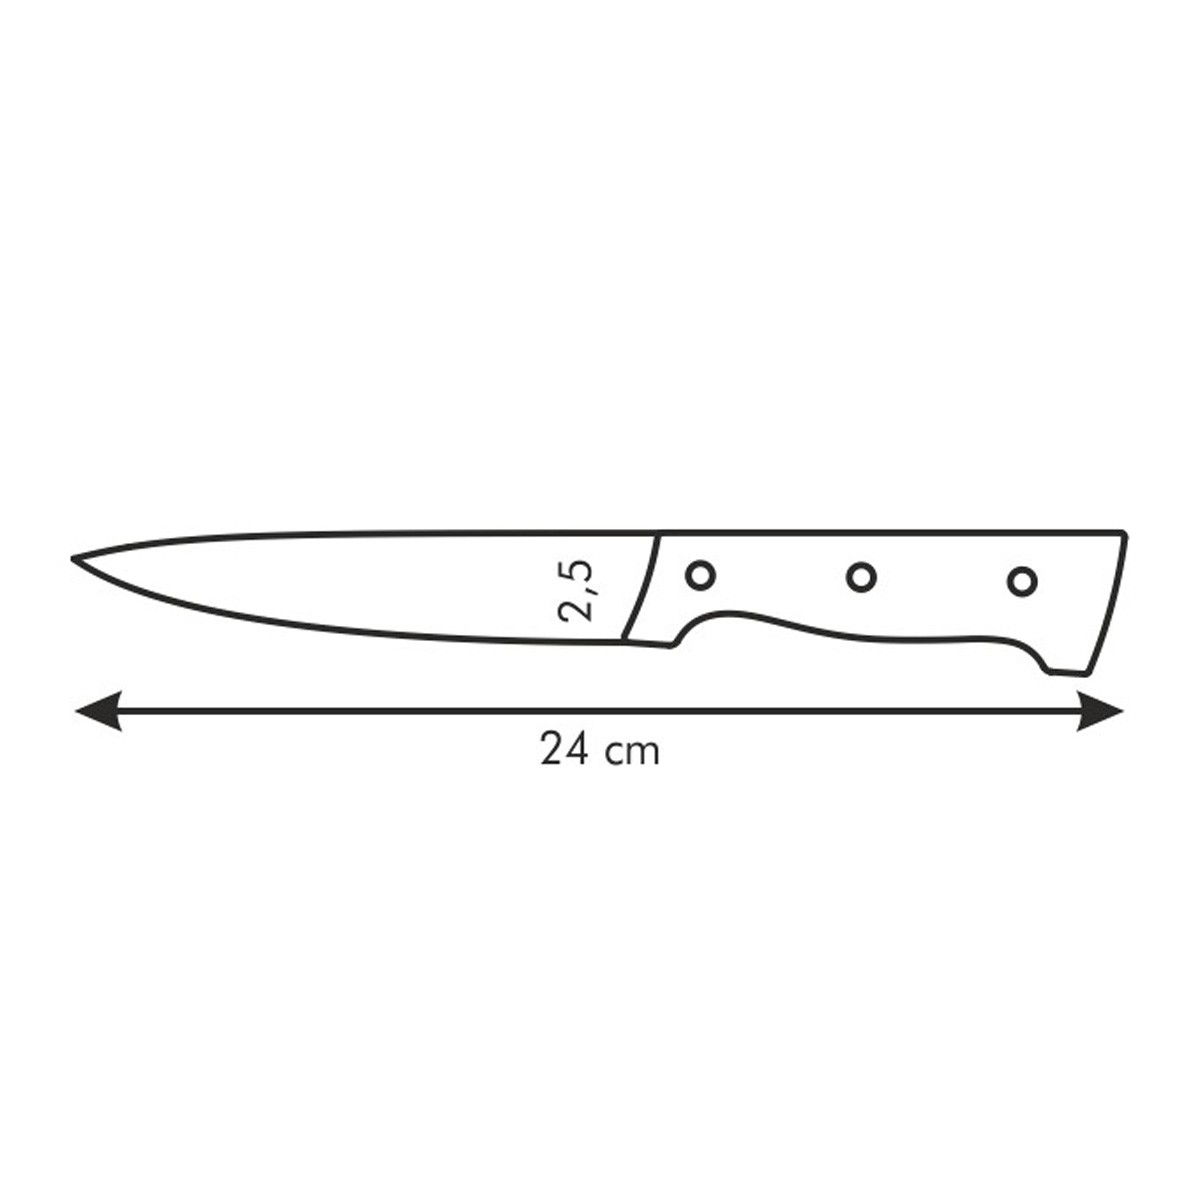 Nůž univerzální HOME PROFI 13 cm